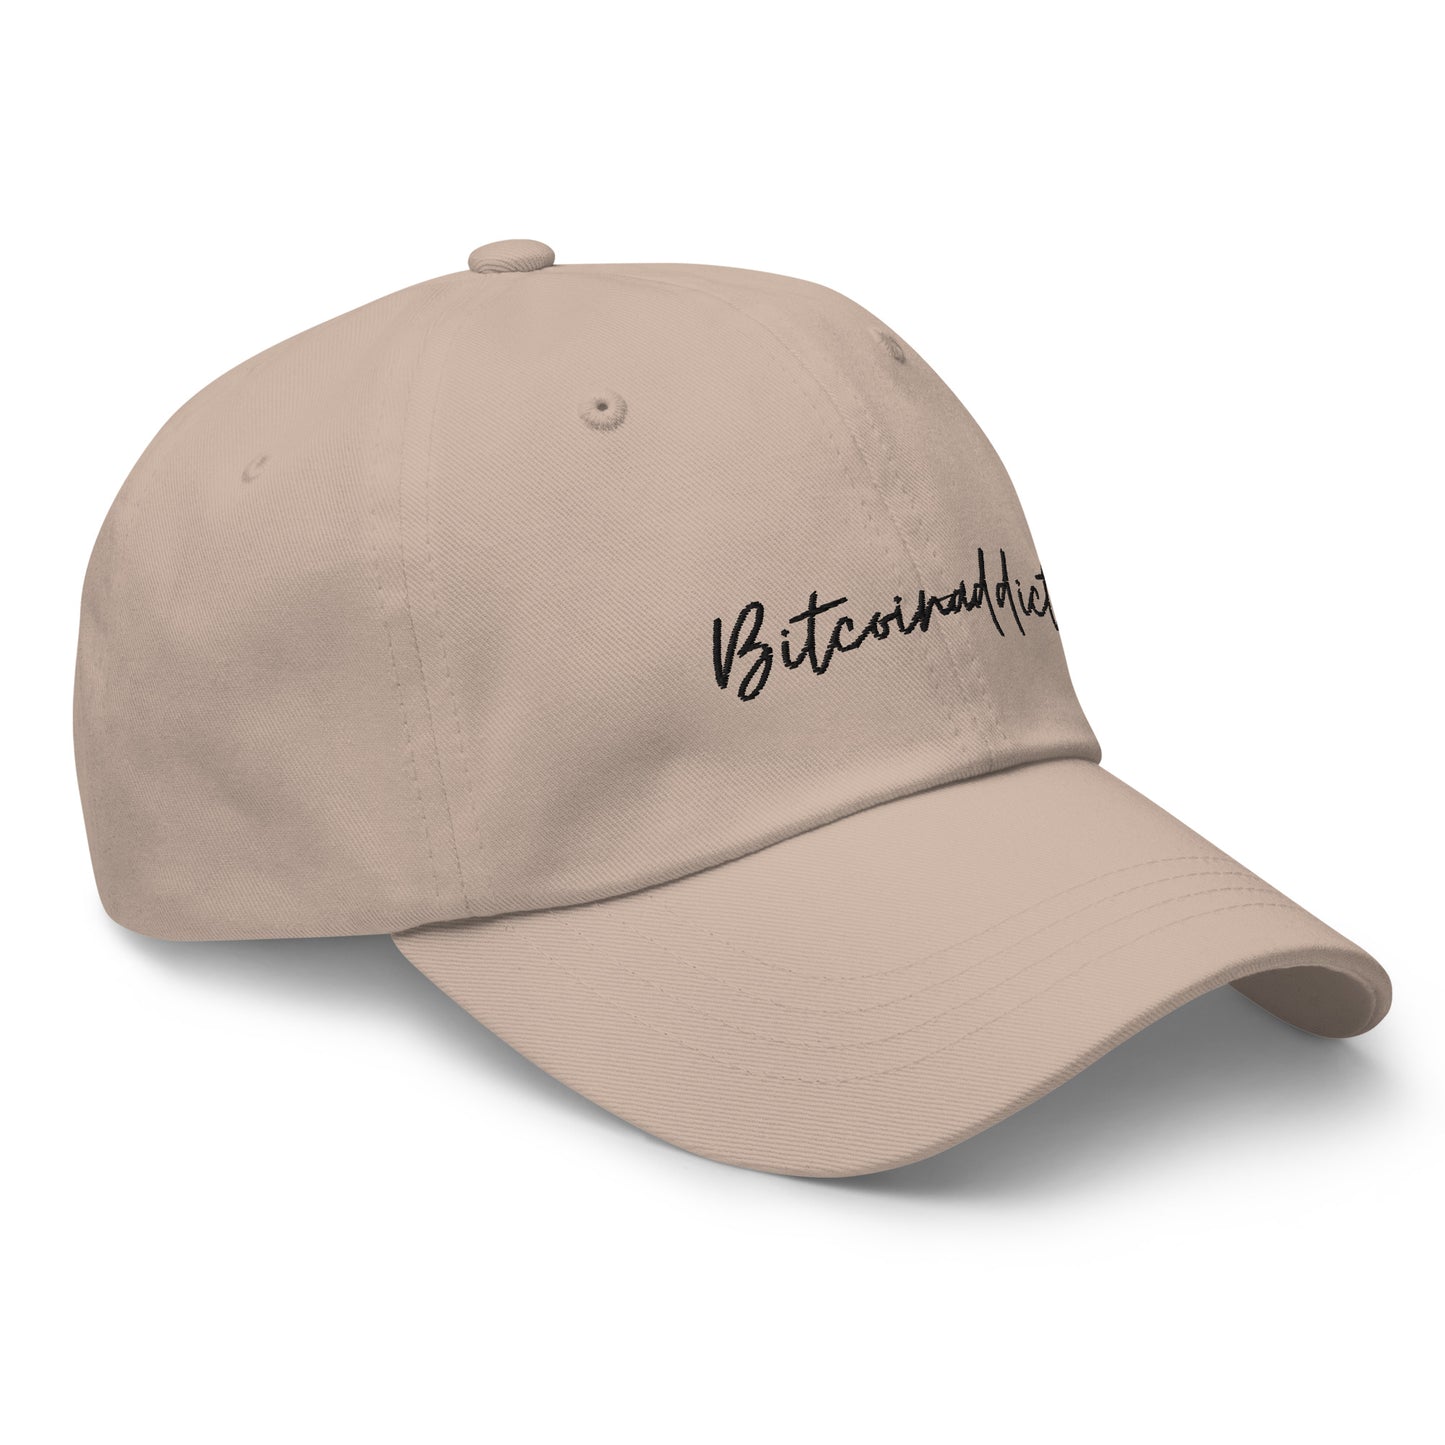 BITCOINADDICT Comfort Basecap